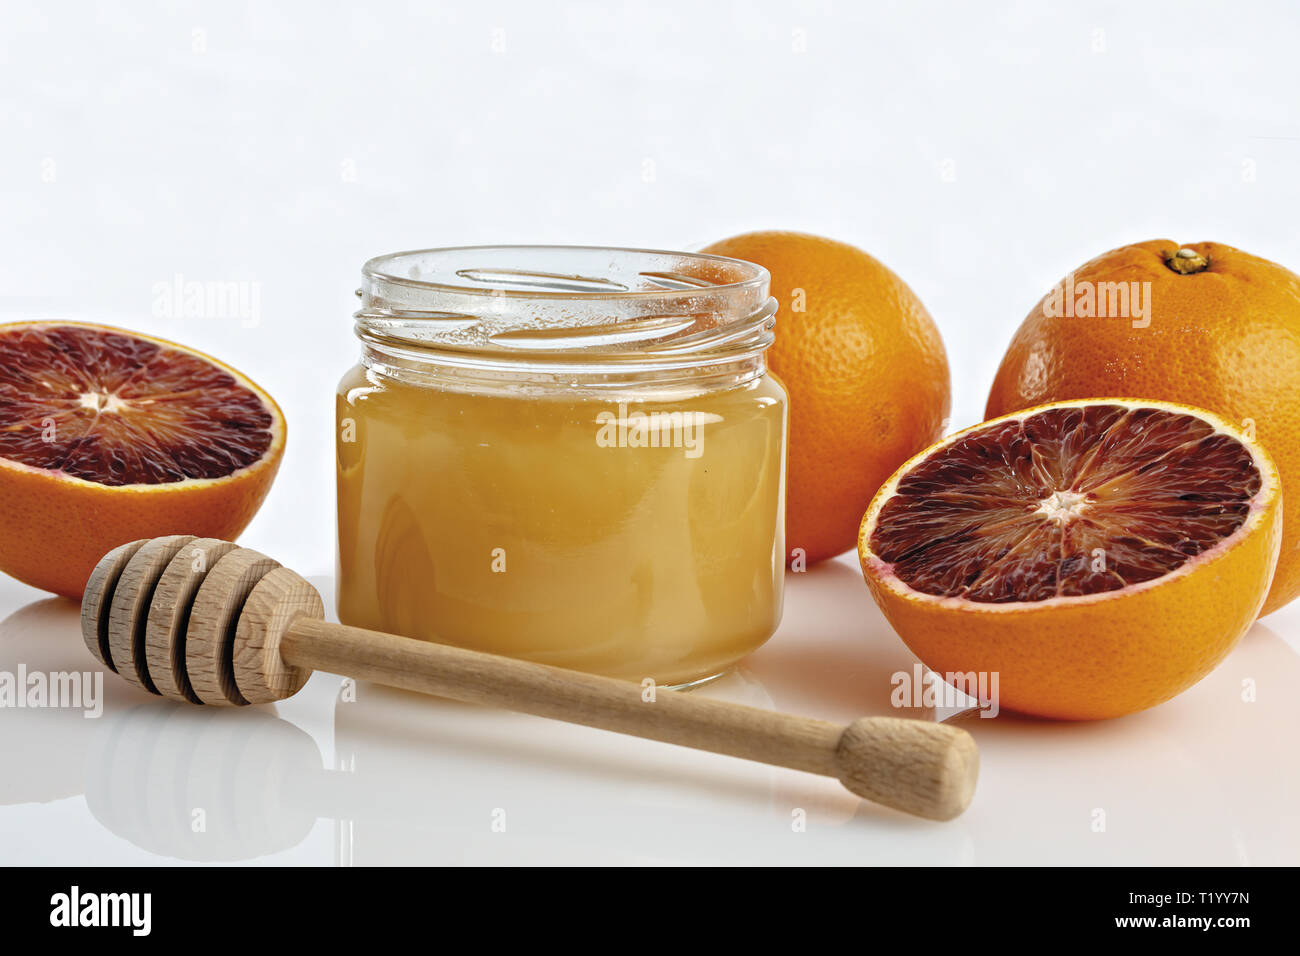 Miele all'arancio in vaso con arance tagliate. primo piano con cucchiaio Foto Stock